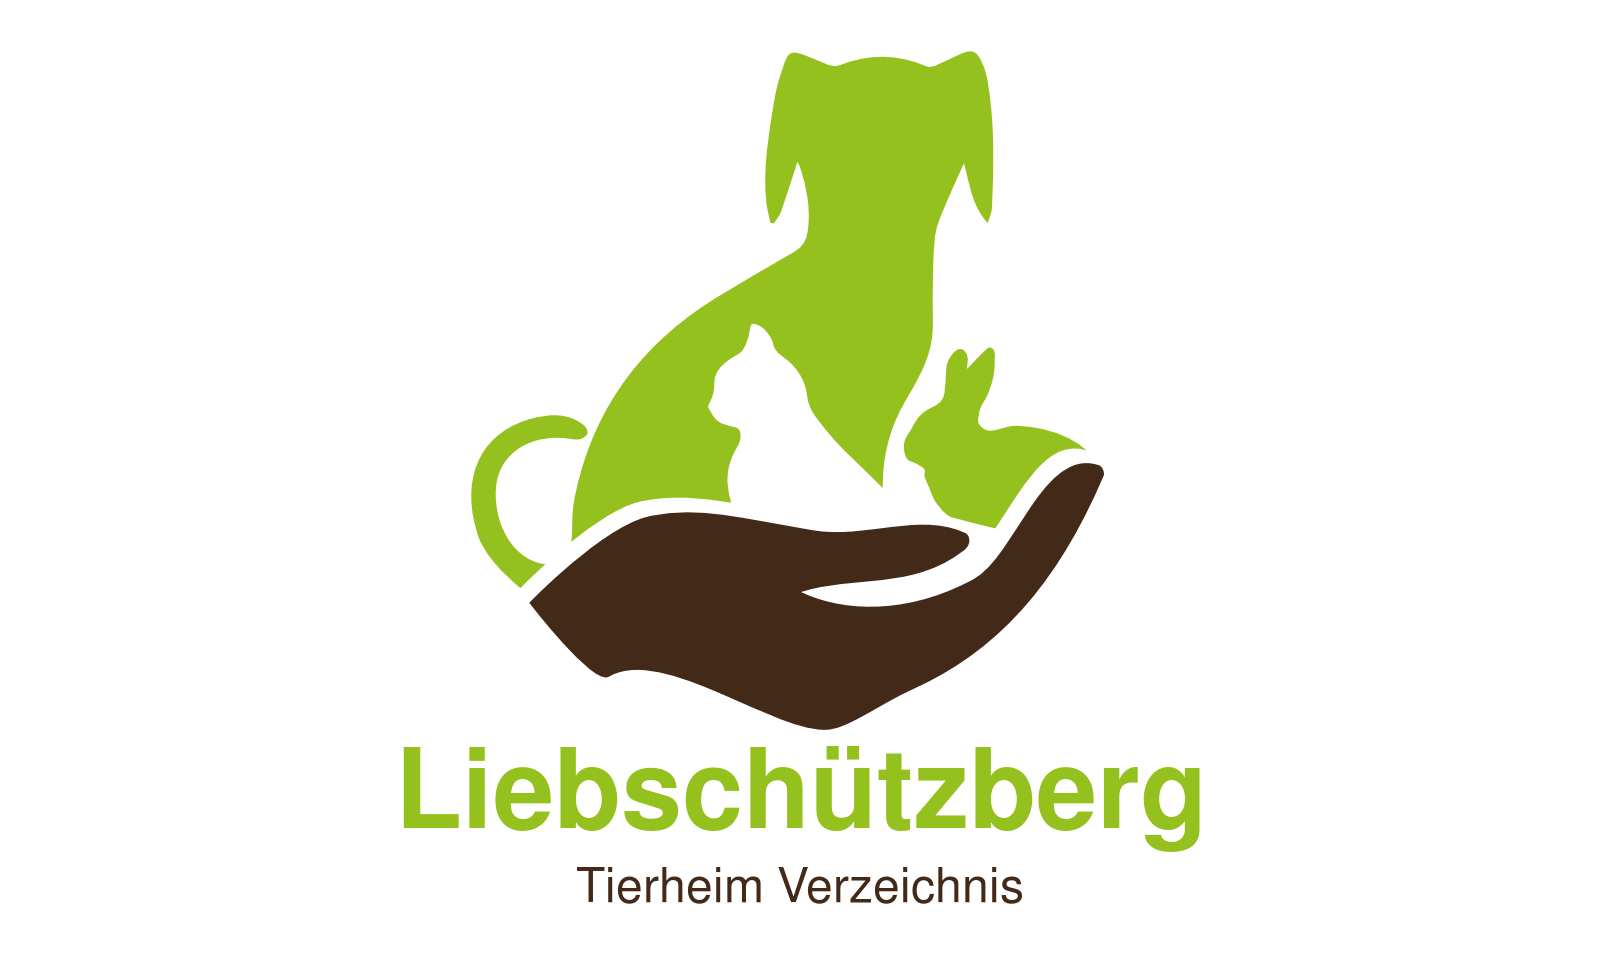 Tierheim Liebschützberg